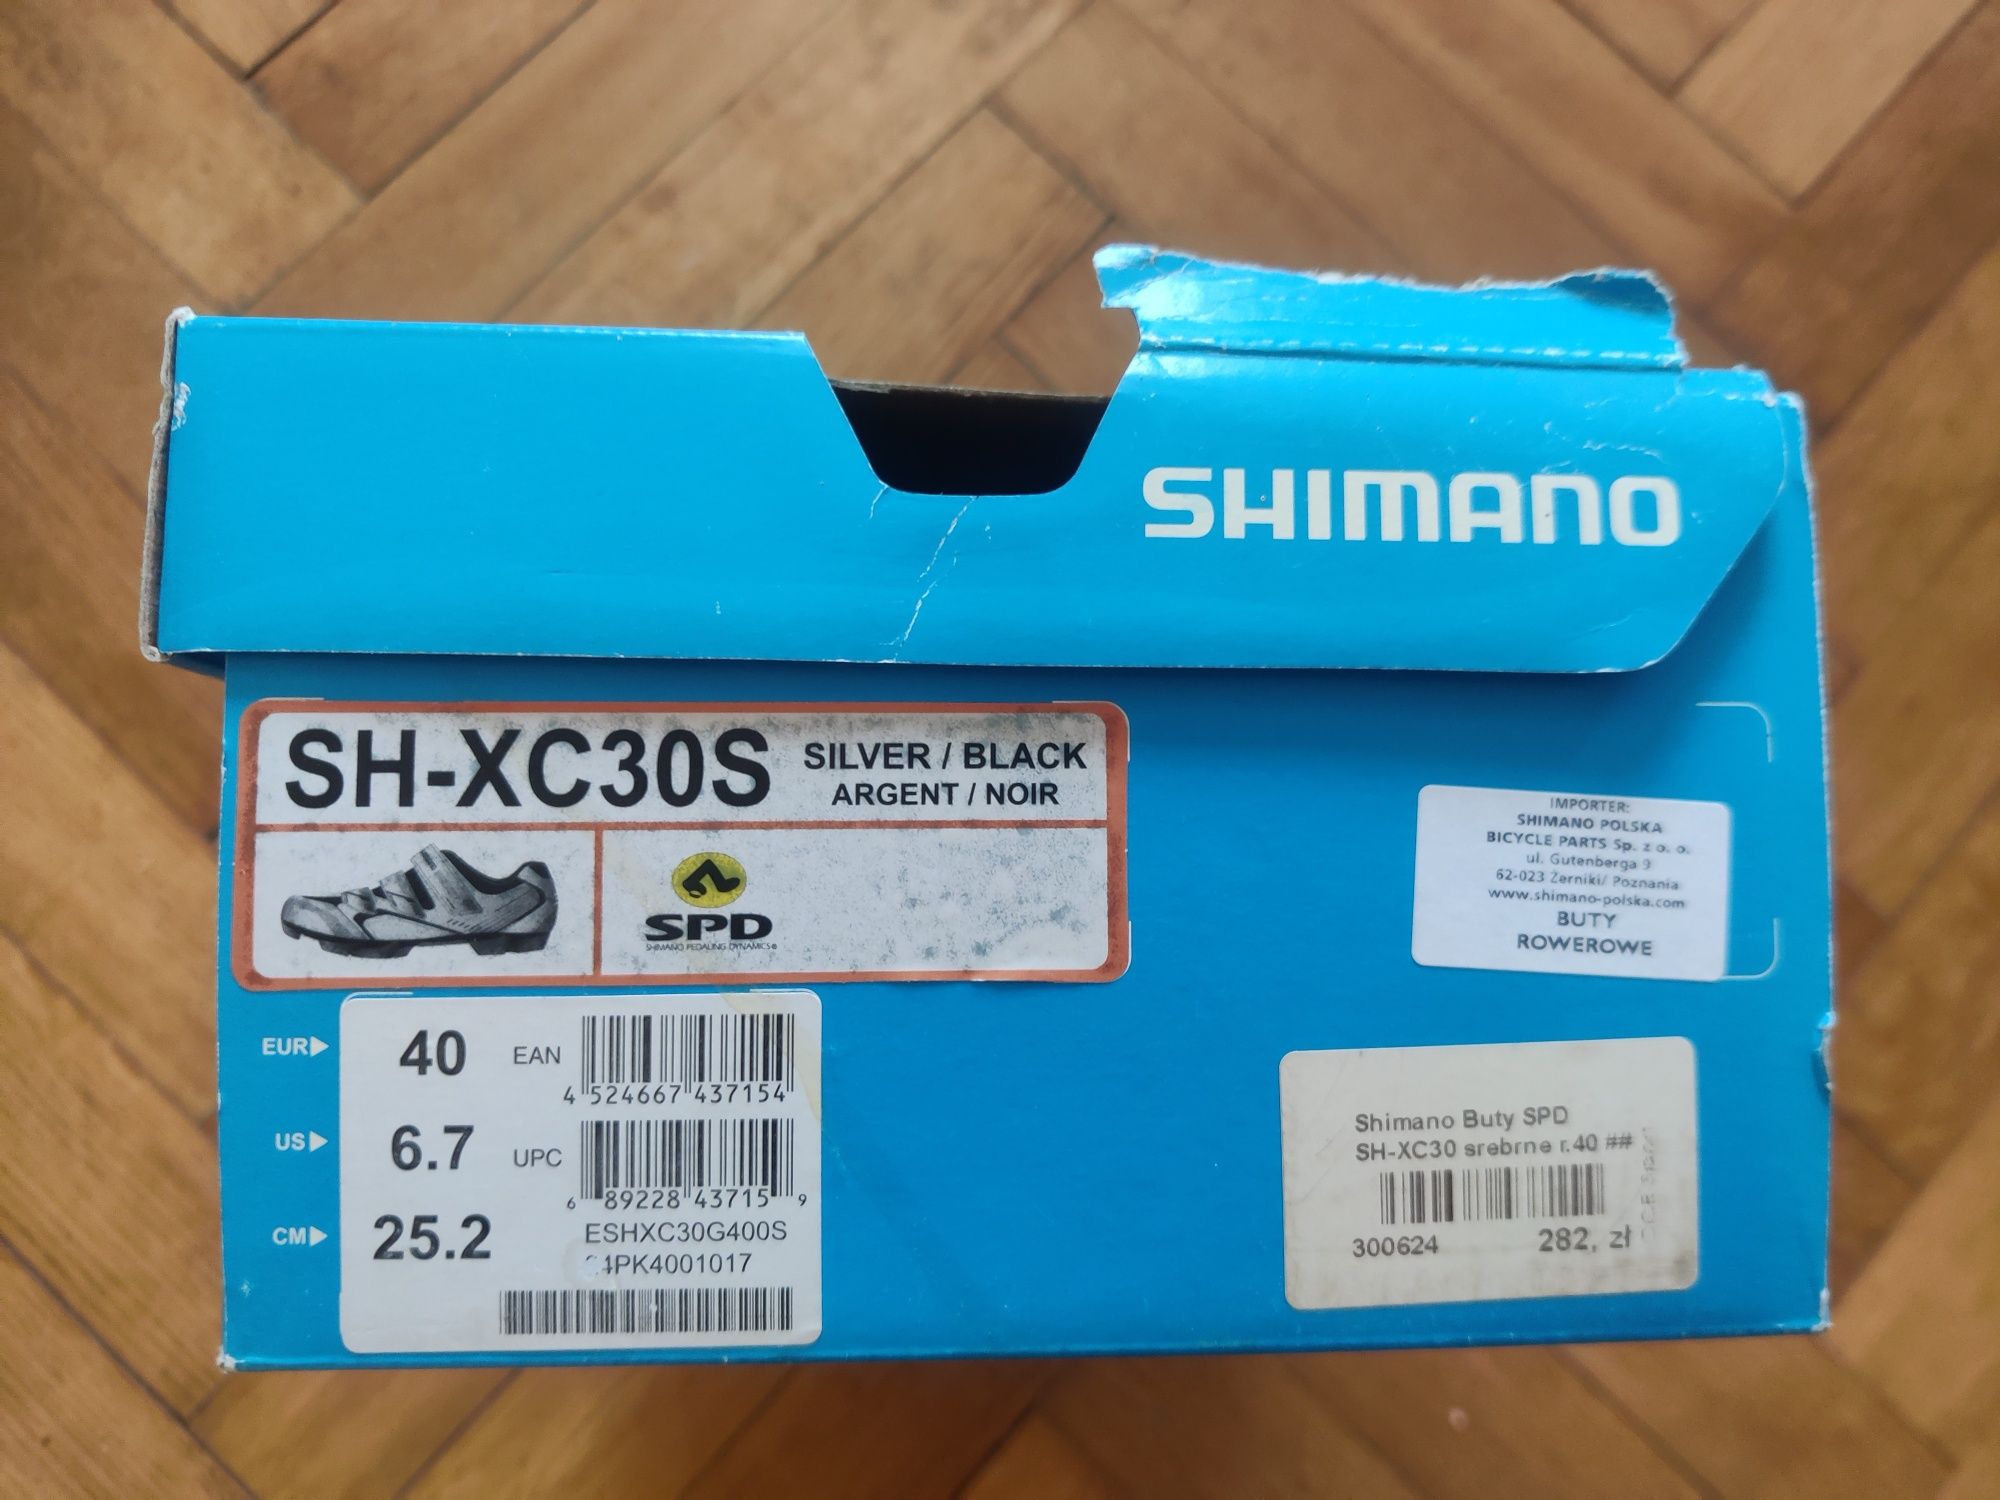 Buty SPD Shimano SH-XC30S